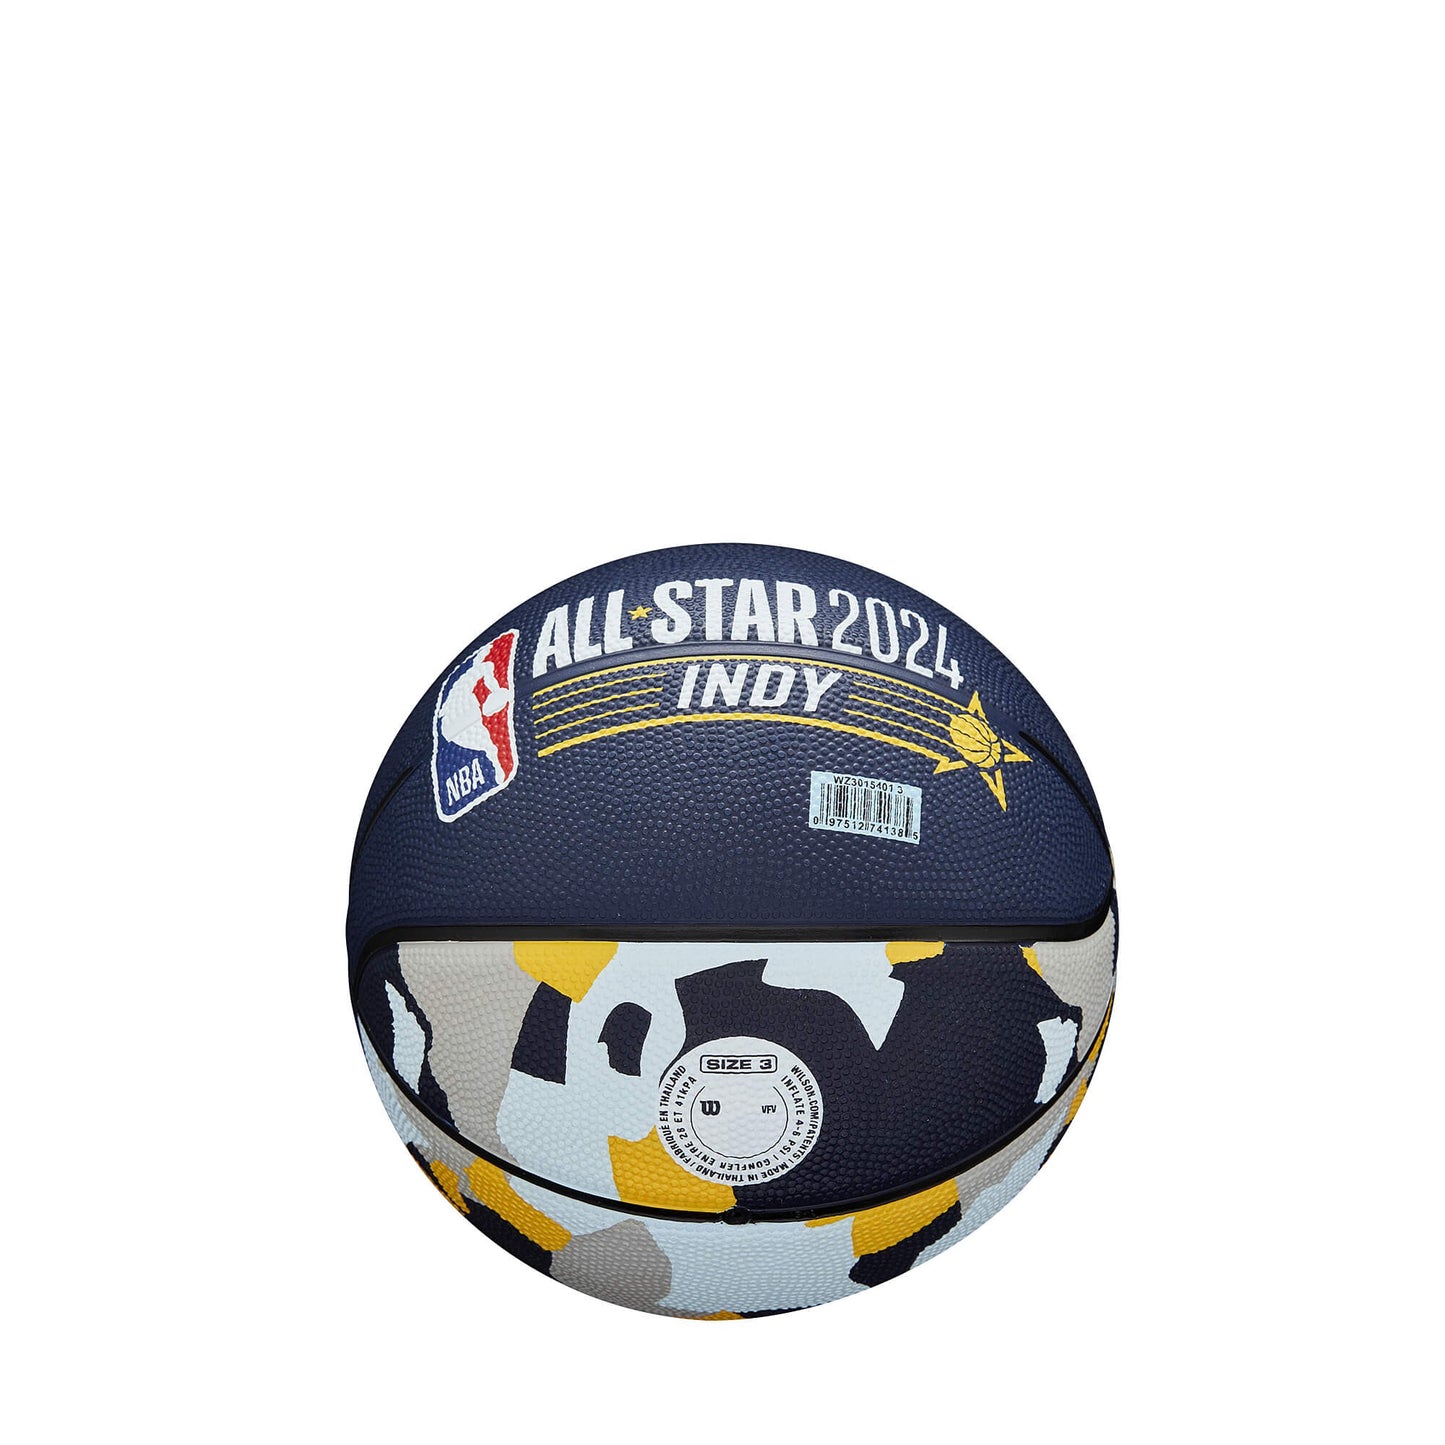 Wilson 2024 NBA All Star Mini Bskt (sz. 3)